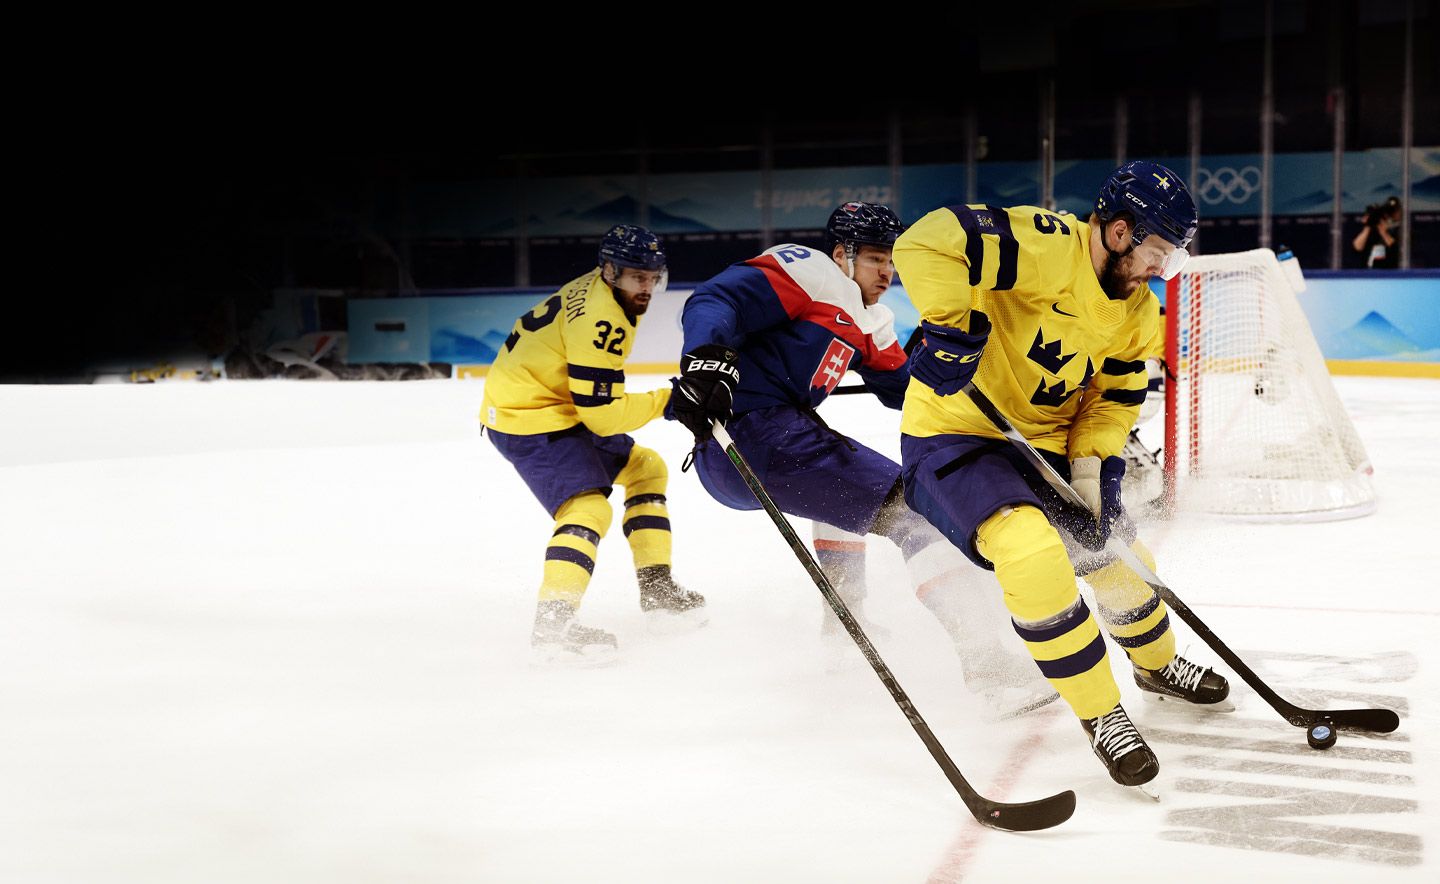 Oscar Fantenberg numéro 5 de l'équipe de Suède est mis au défi par Milos Kelemen numéro 12 de l'équipe de Slovaquie lors de la première période du match de hockey sur glace masculin pour la médaille de bronze entre l'équipe de Suède et l'équipe de Slovaquie le 15ème jour des Jeux olympiques d'hiver de Beijing 2022 au Stade couvert national le 19 février 2022 à Pékin, Chine.